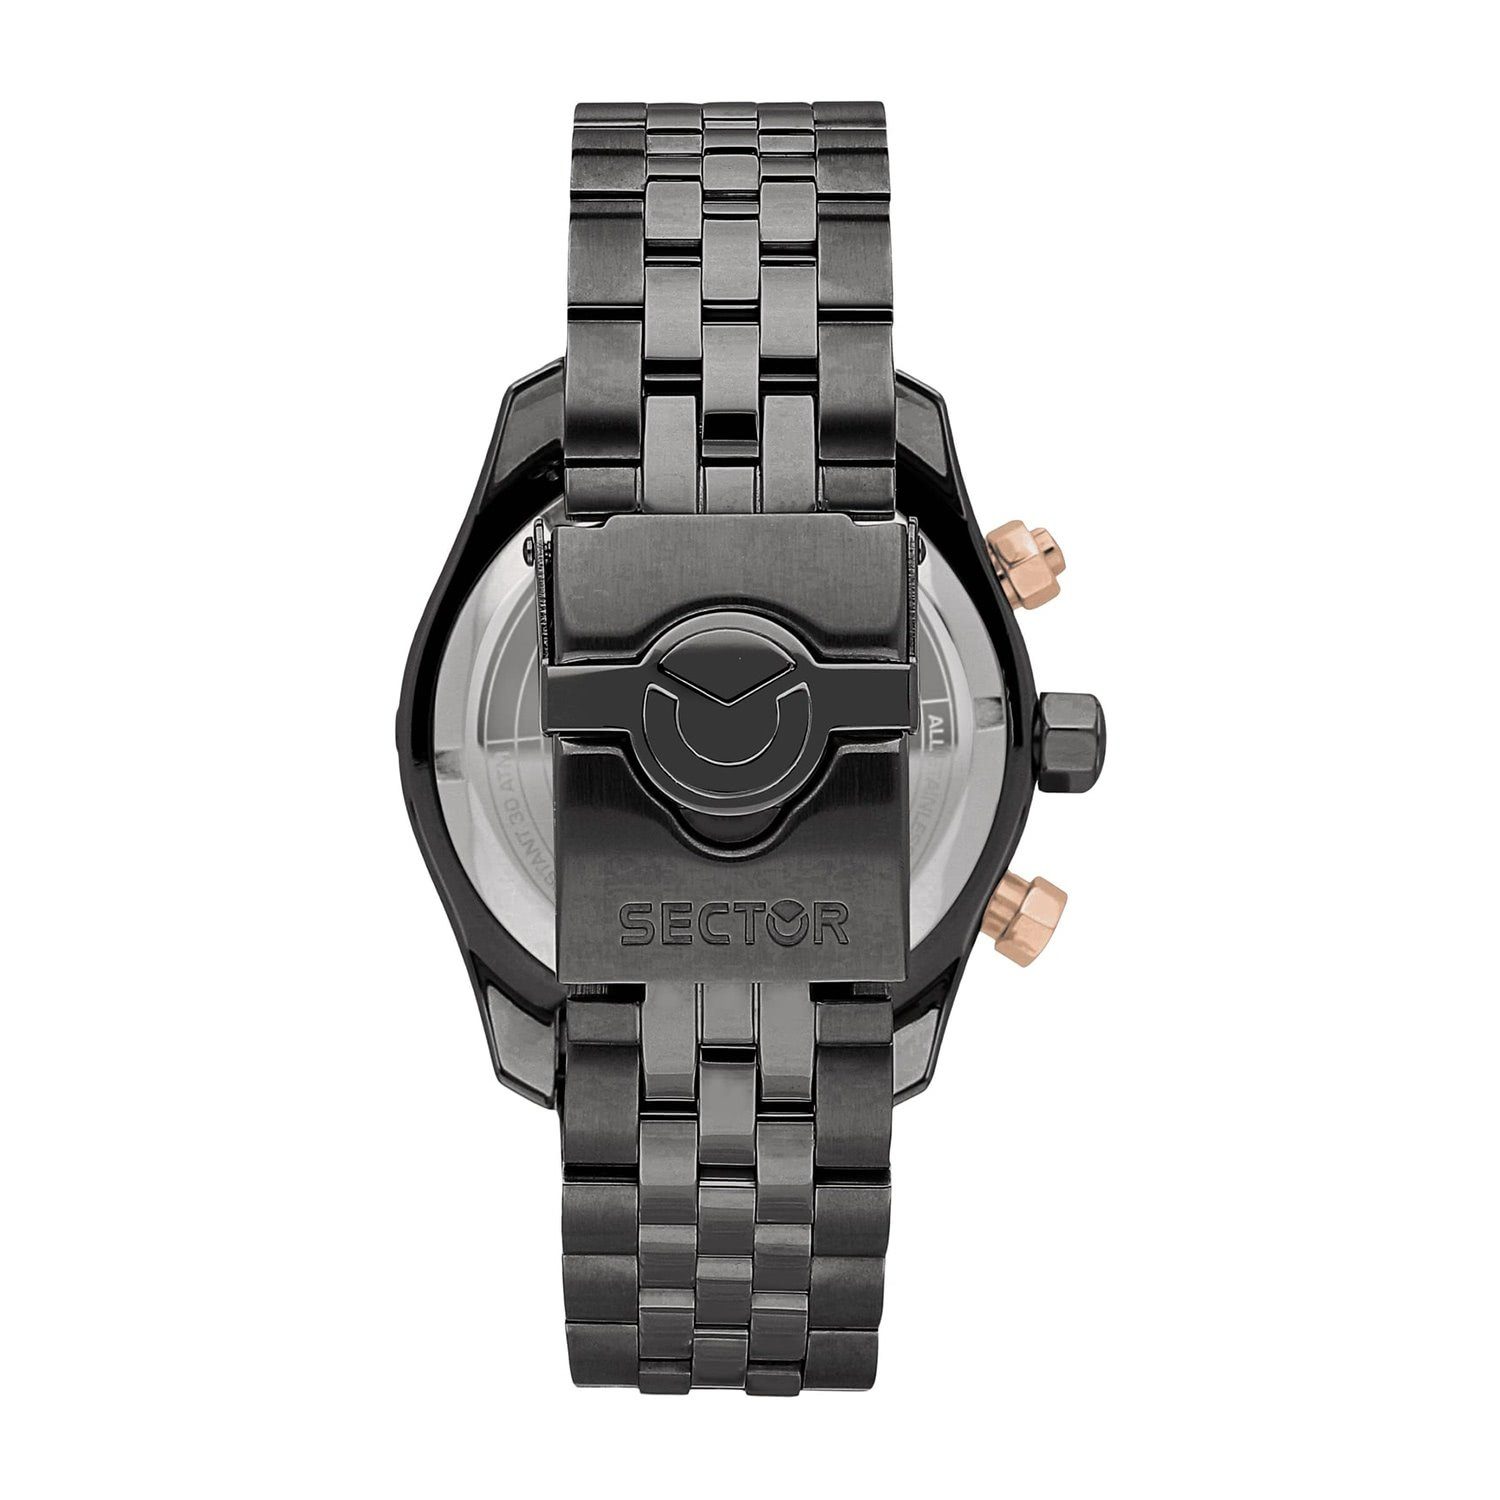 Herren Fashion Armbanduhr schwarz, groß (43mm) Edelstahlarmband Chrono, Herren Armbanduhr Chronograph Sector rund, Sector